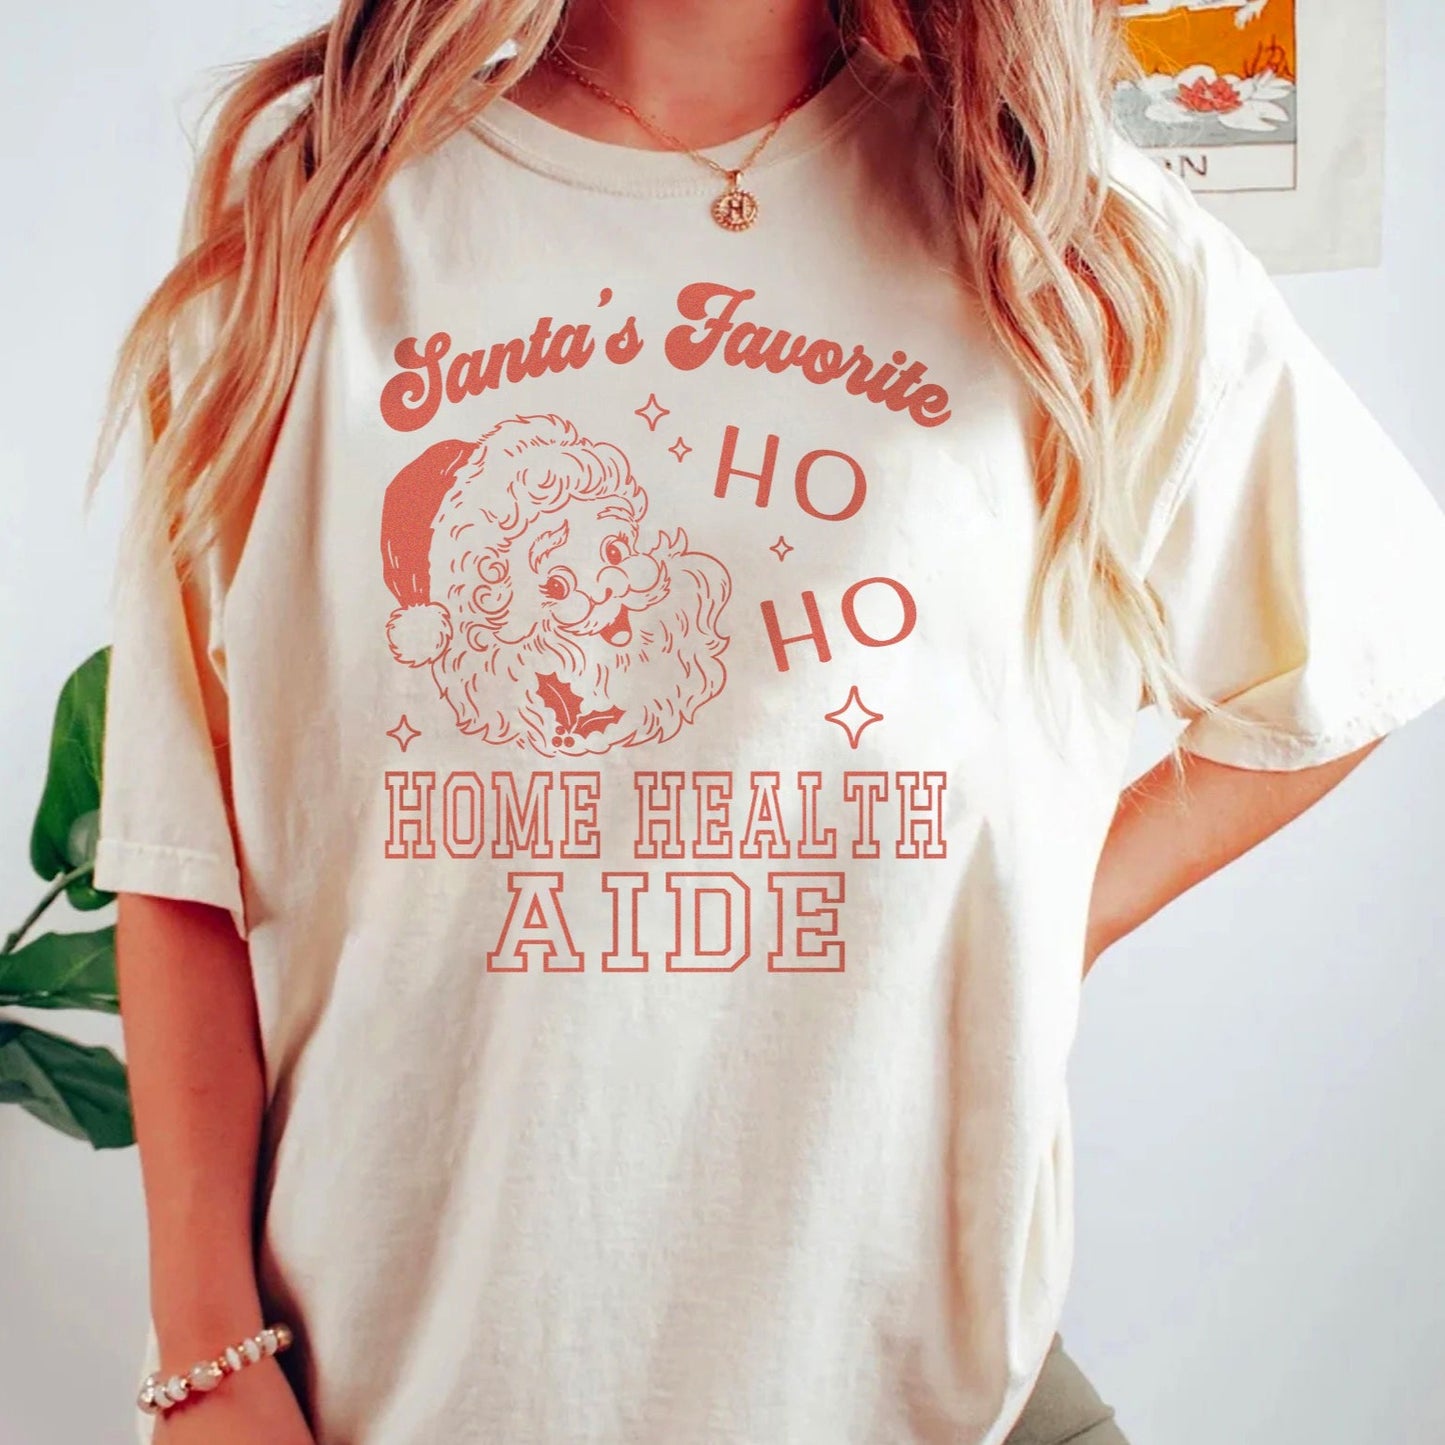 Santa's Favorite Ho Ho Home Health Aide T-Shirt